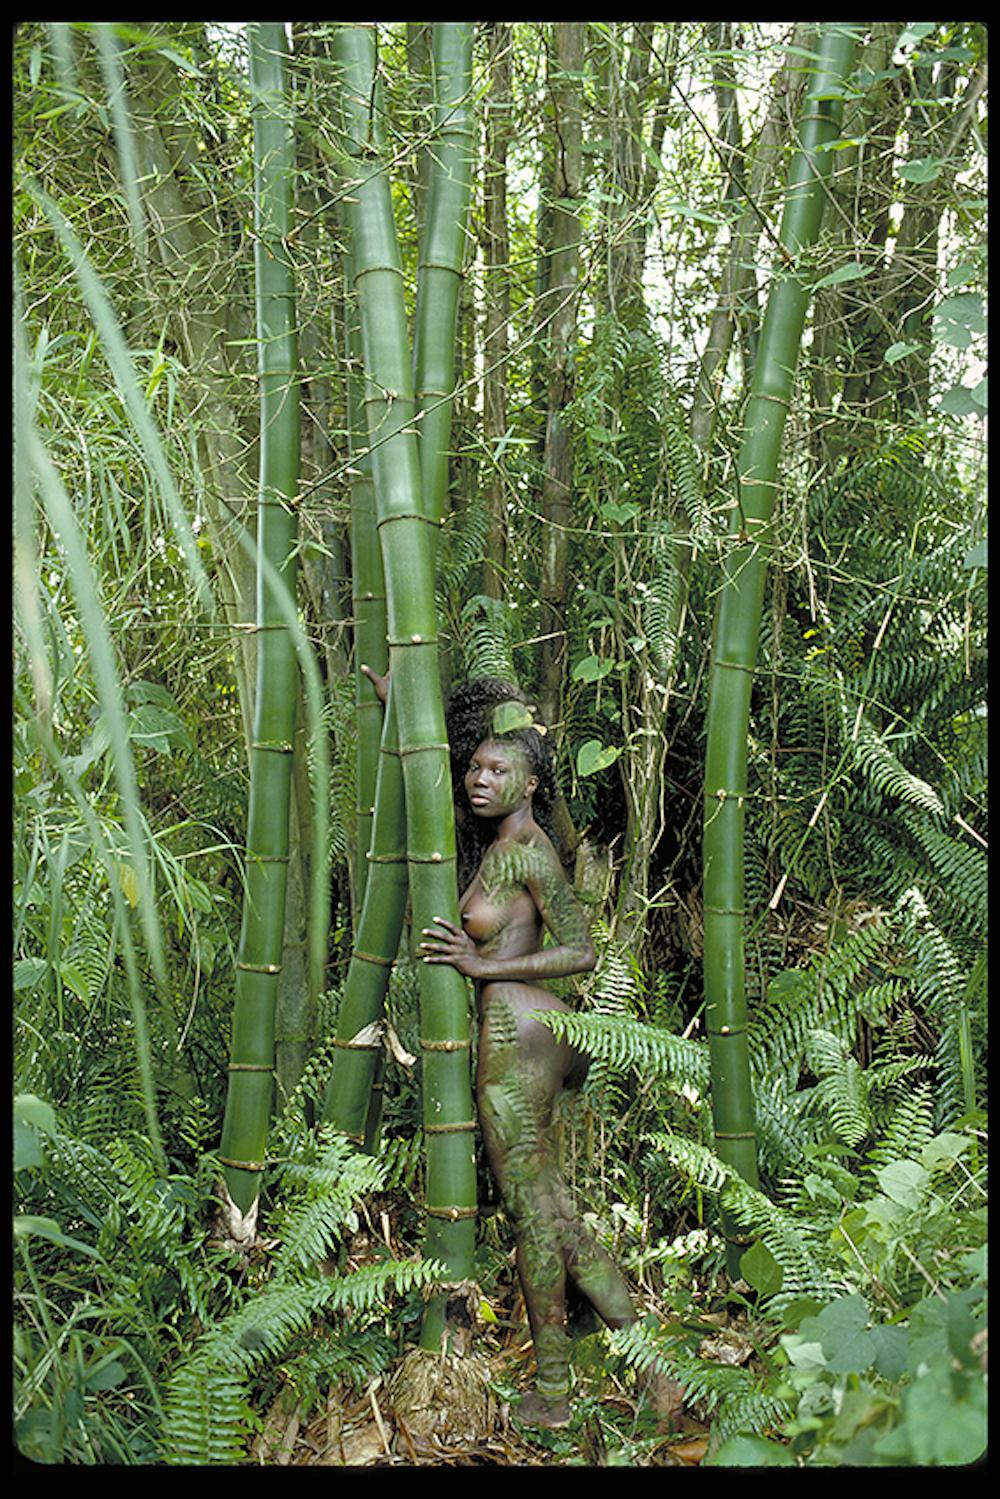 Uwe Ommer Nude Photograph – Frauen und Bäume I. Farbfotografie in limitierter Auflage